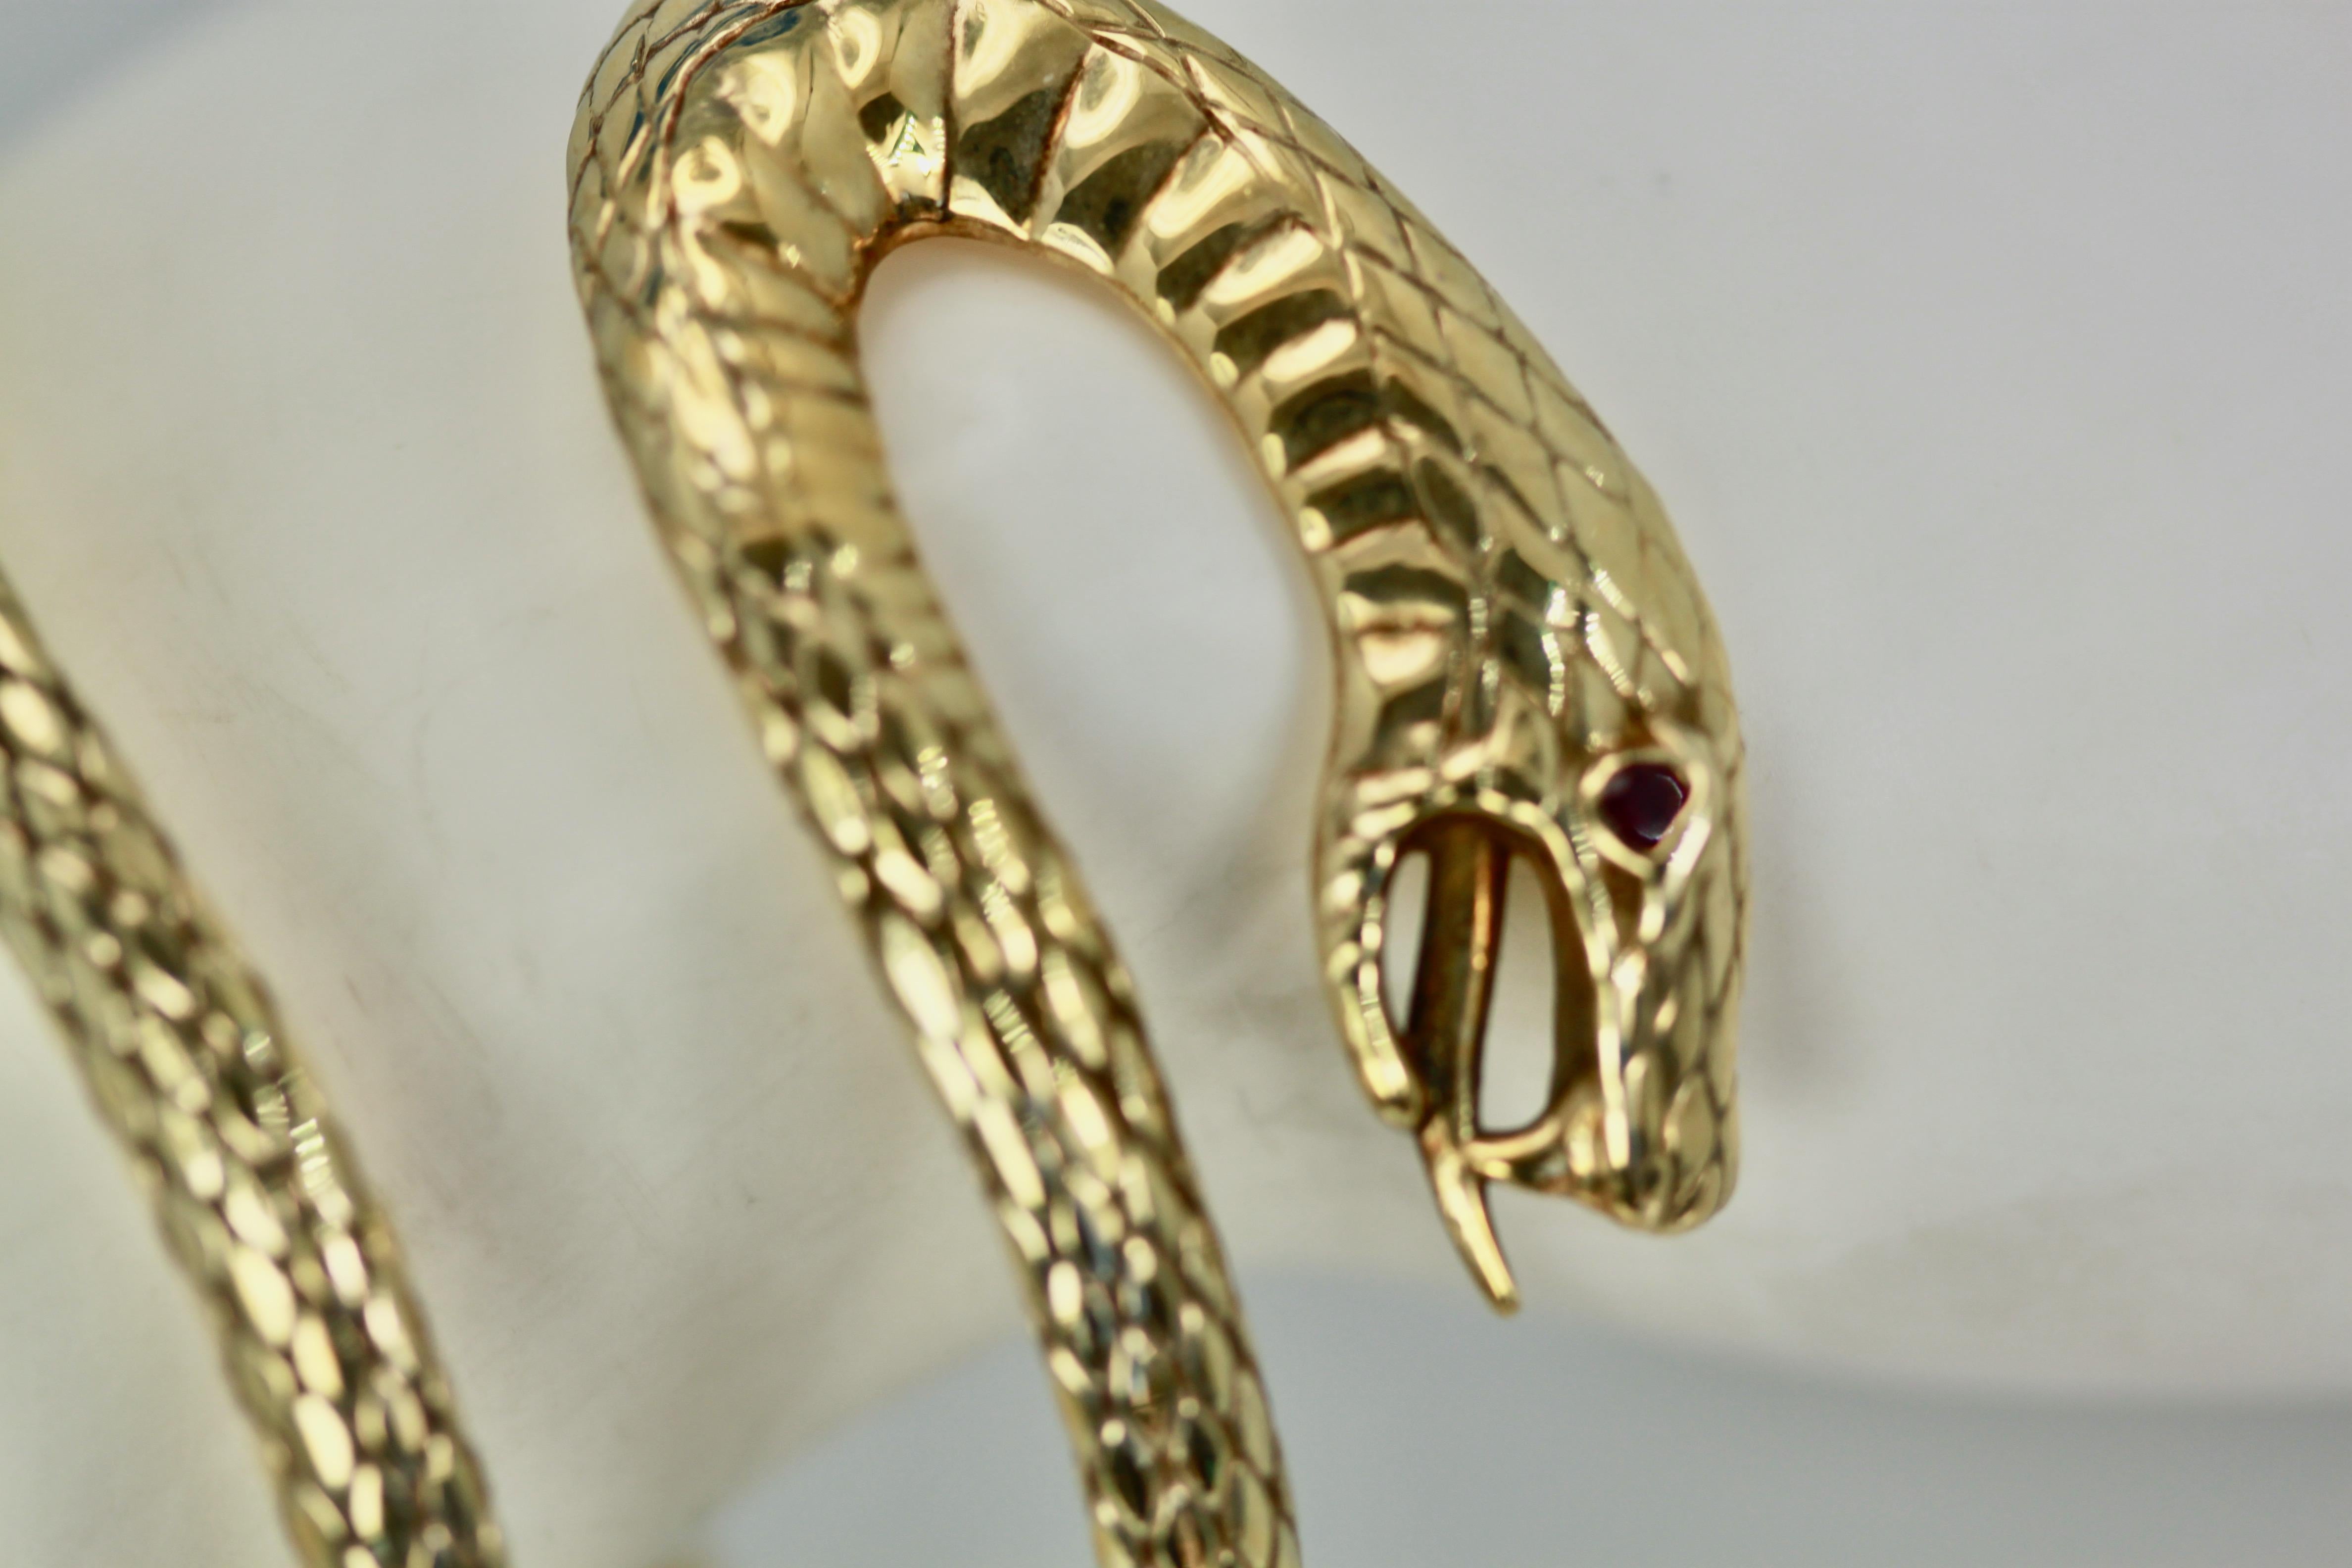 Cet étonnant bracelet serpent est entièrement détaillé et gravé. Elle est attribuée à Stephen Webster. Grâce à sa forme inhabituelle, il s'adapte à de nombreuses tailles de poignets et est vraiment unique.  Ce serpent a un œil rubis, des crocs et